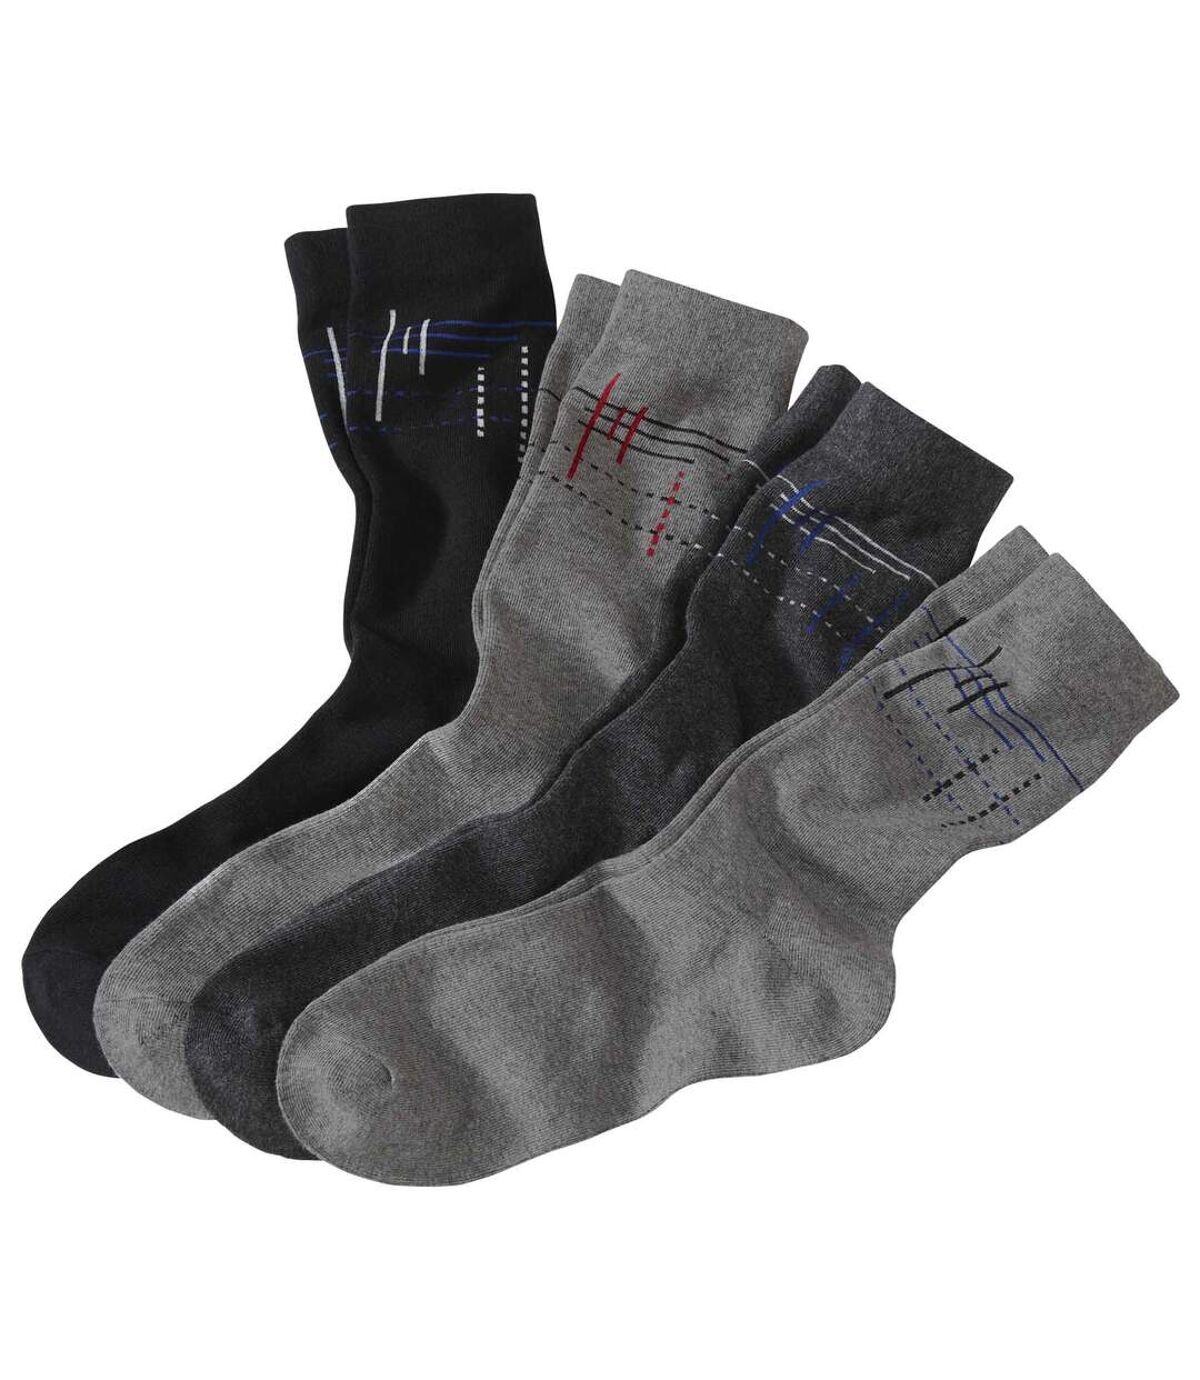 Pack of 4 Pairs of Men's Patterned Socks Atlas For Men